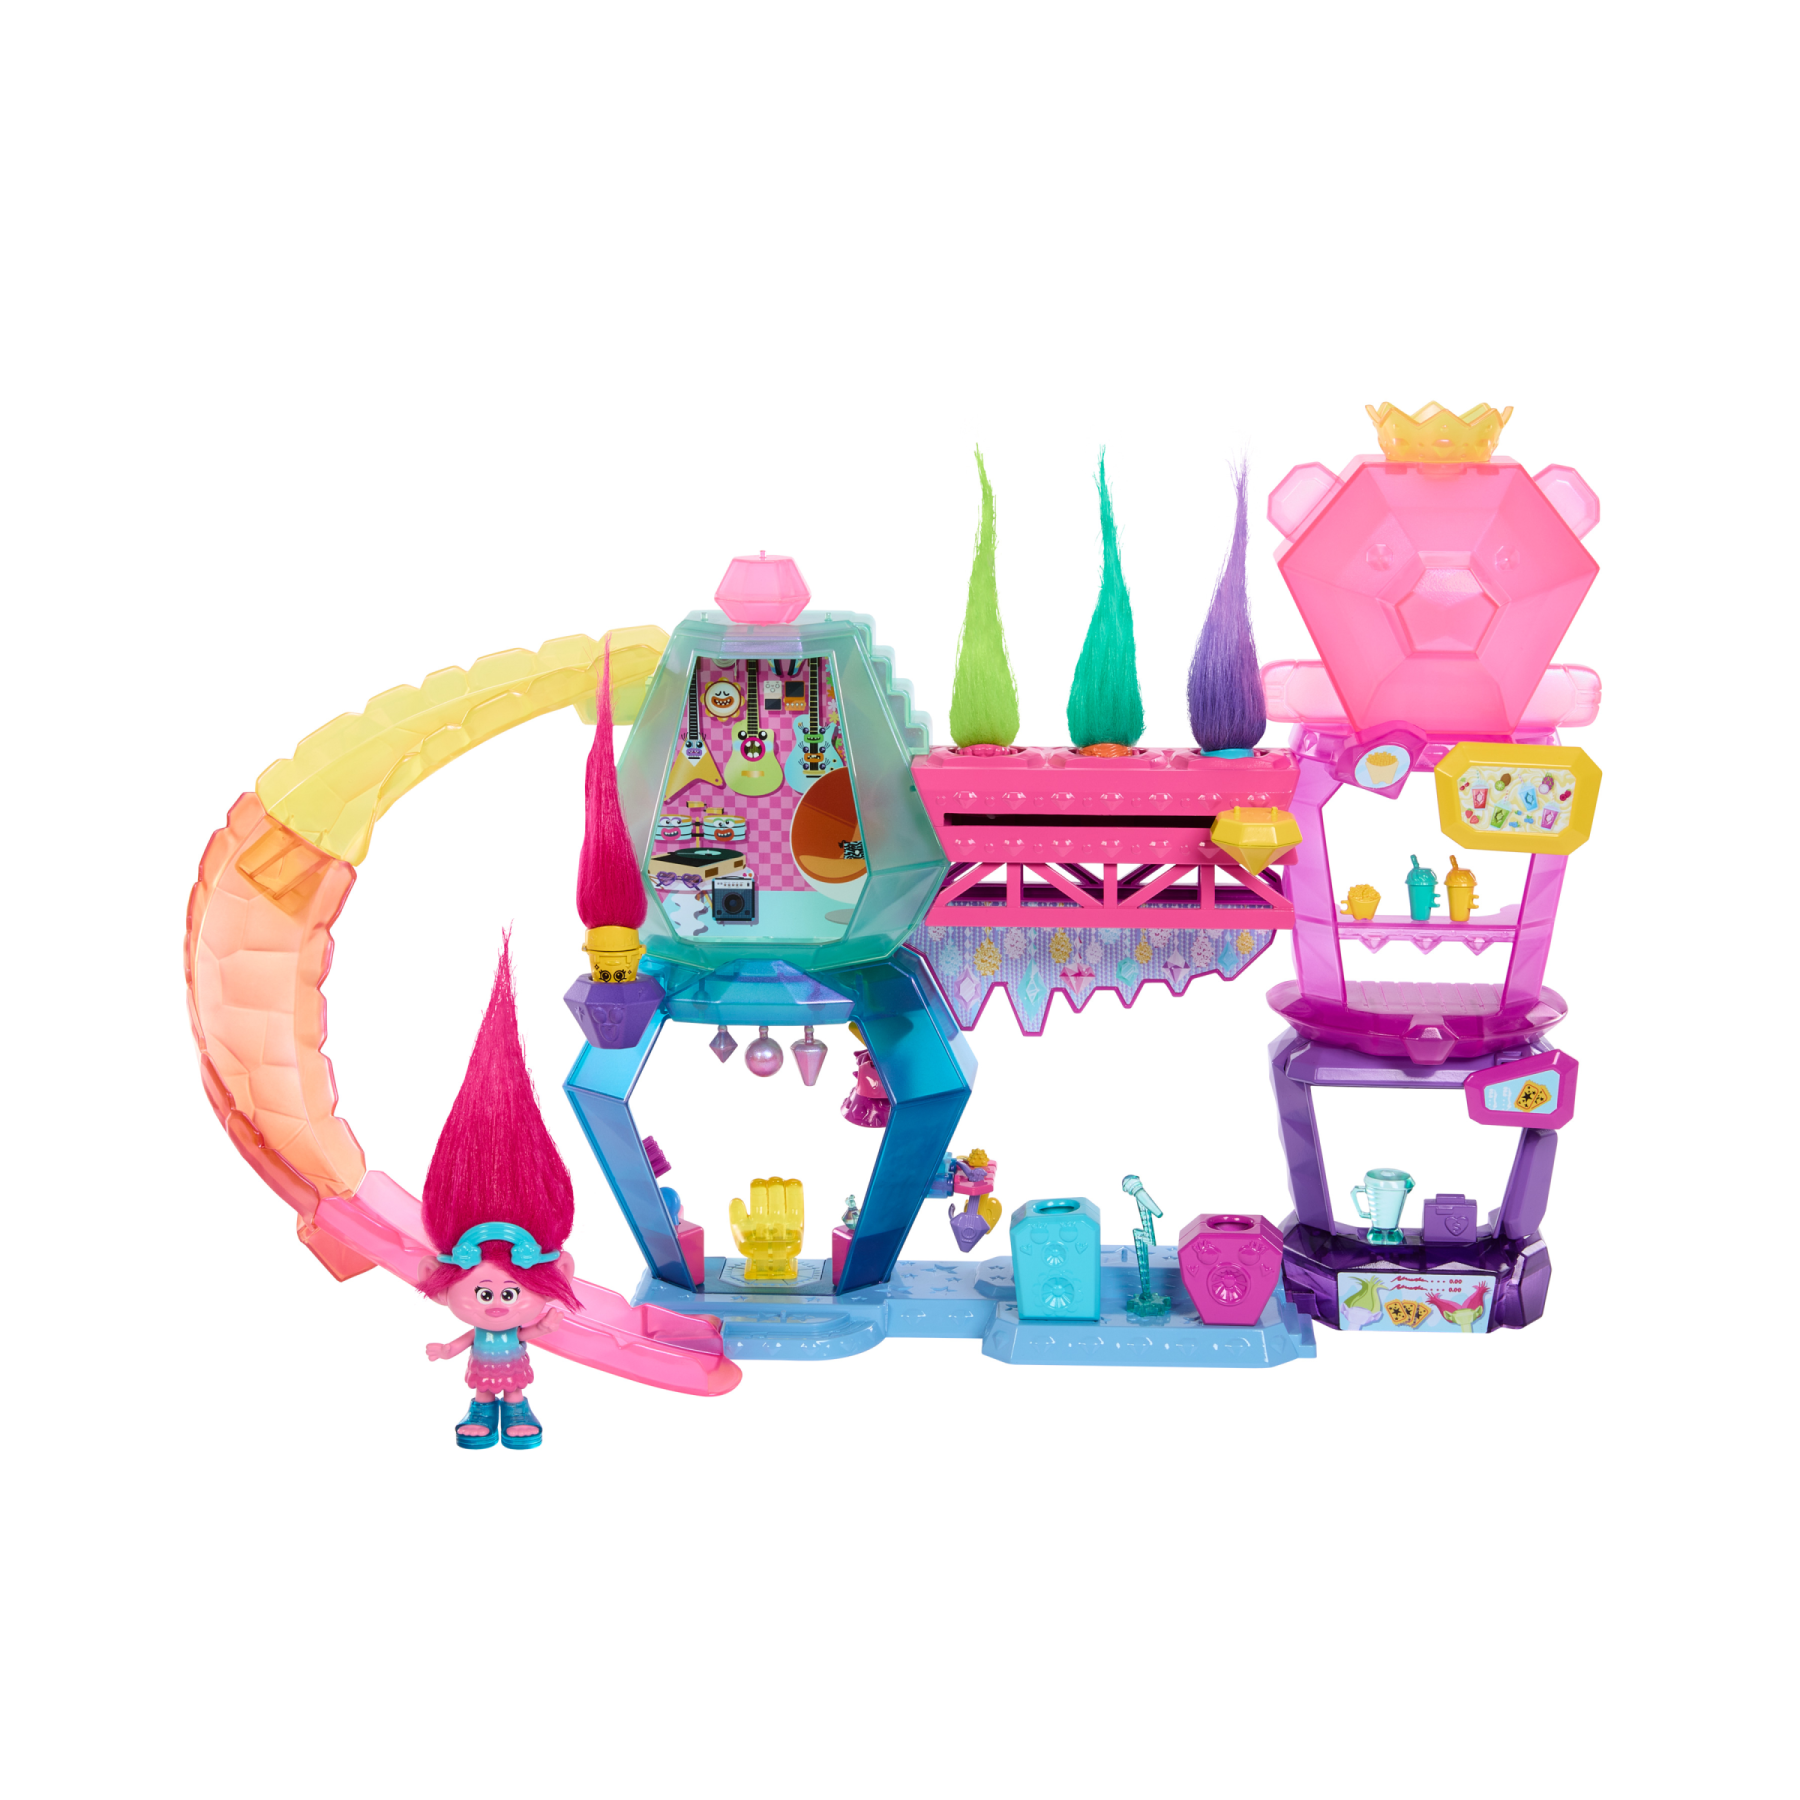 Dreamworks trolls tutti insieme - playset mount rageous, con una mini bambola regina poppy, 4 amici hair pops e 25+ accessori inclusi, ispirato al film, 3+ anni, hnv37 - Trolls